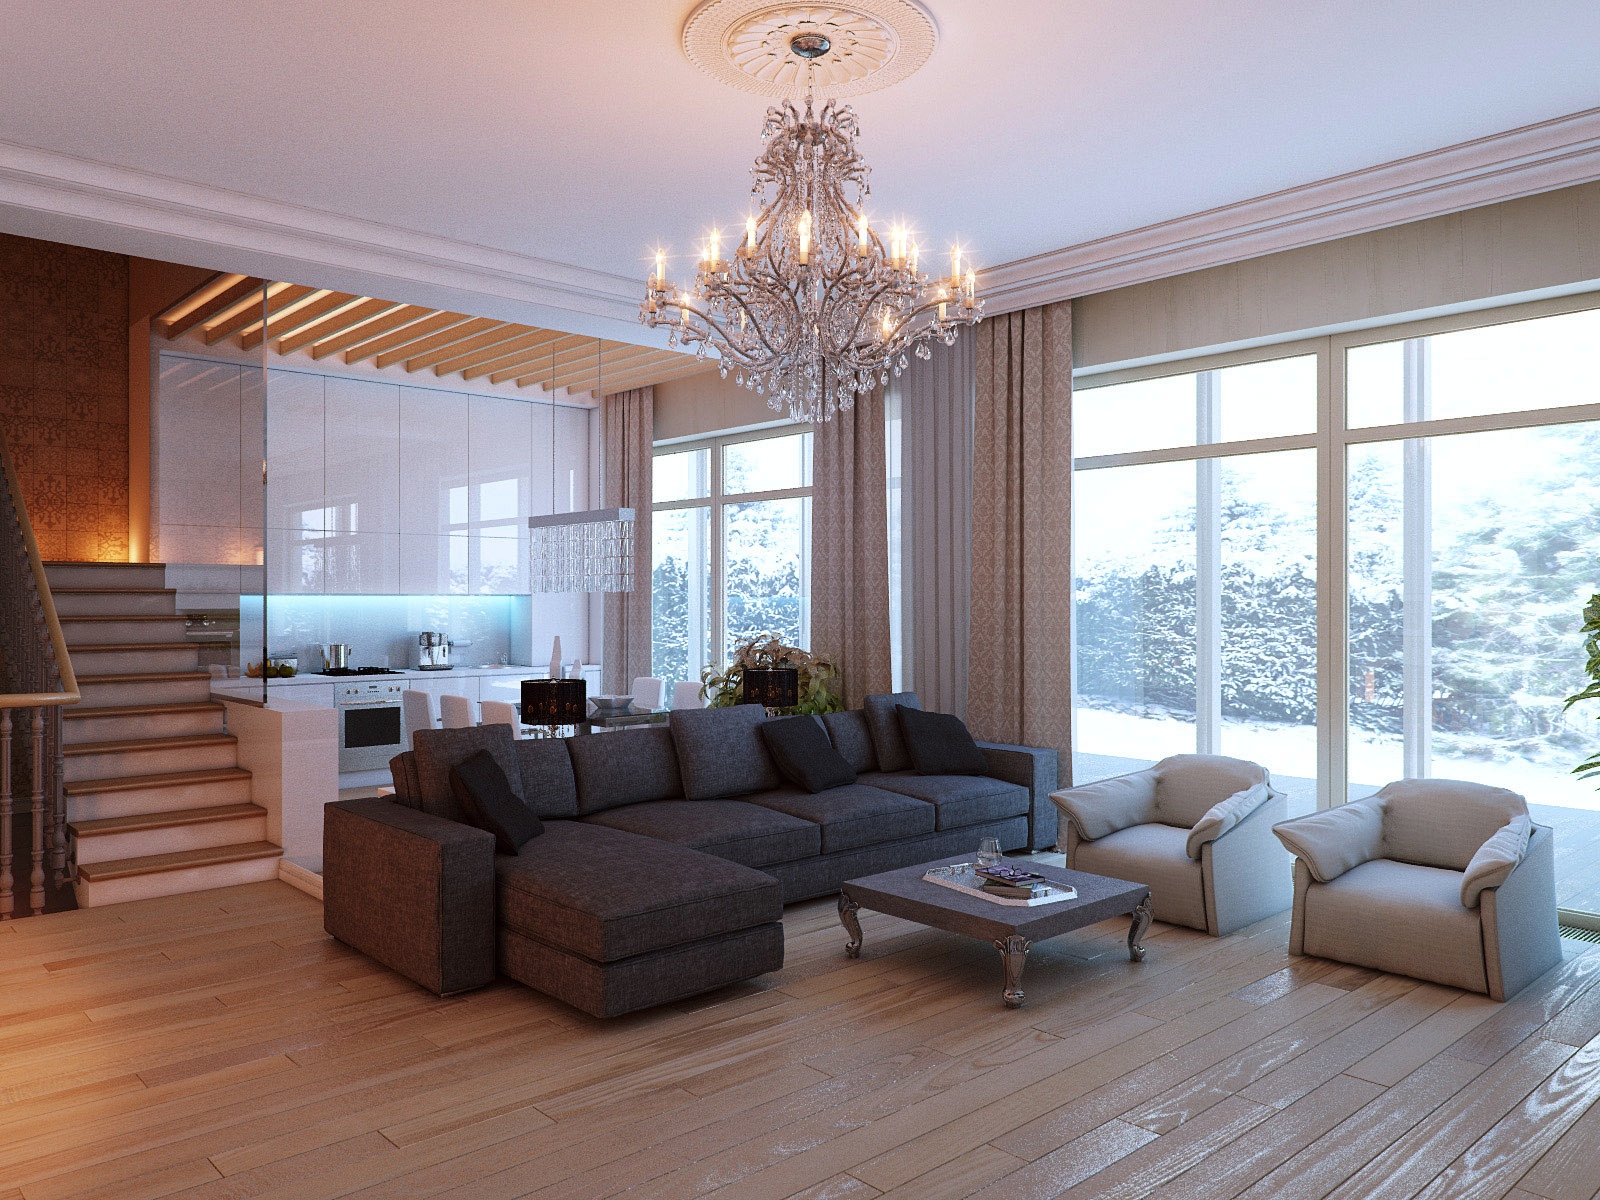 11 Light Hardwood Floors Interior, Light Hardwood Floor Living Room Ideas